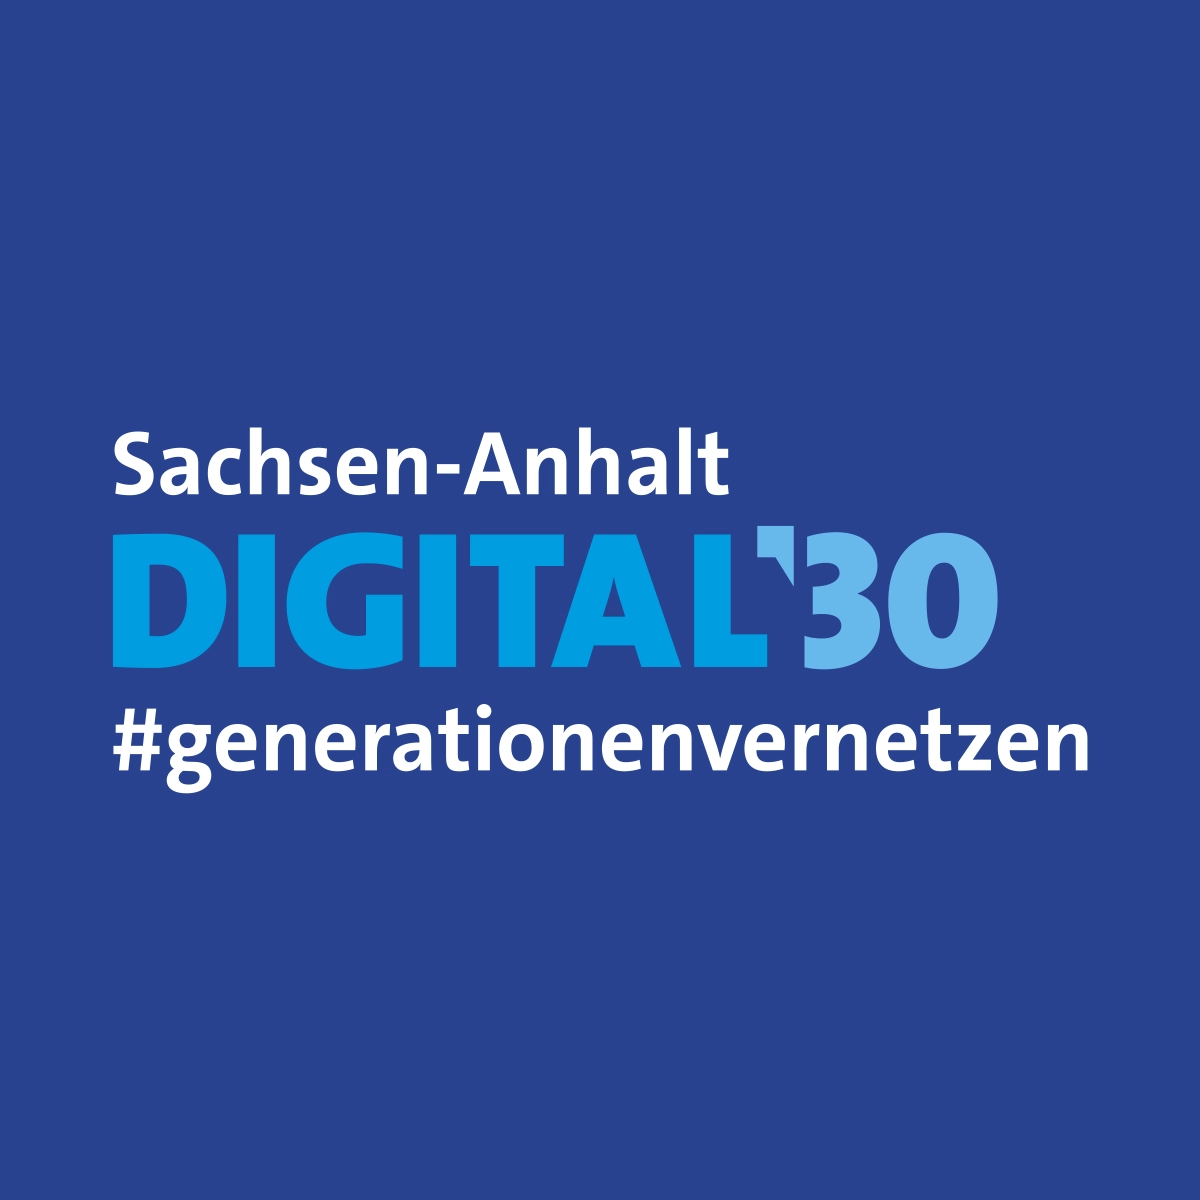 Logogestaltung für Digital'30 auf blauem Grund